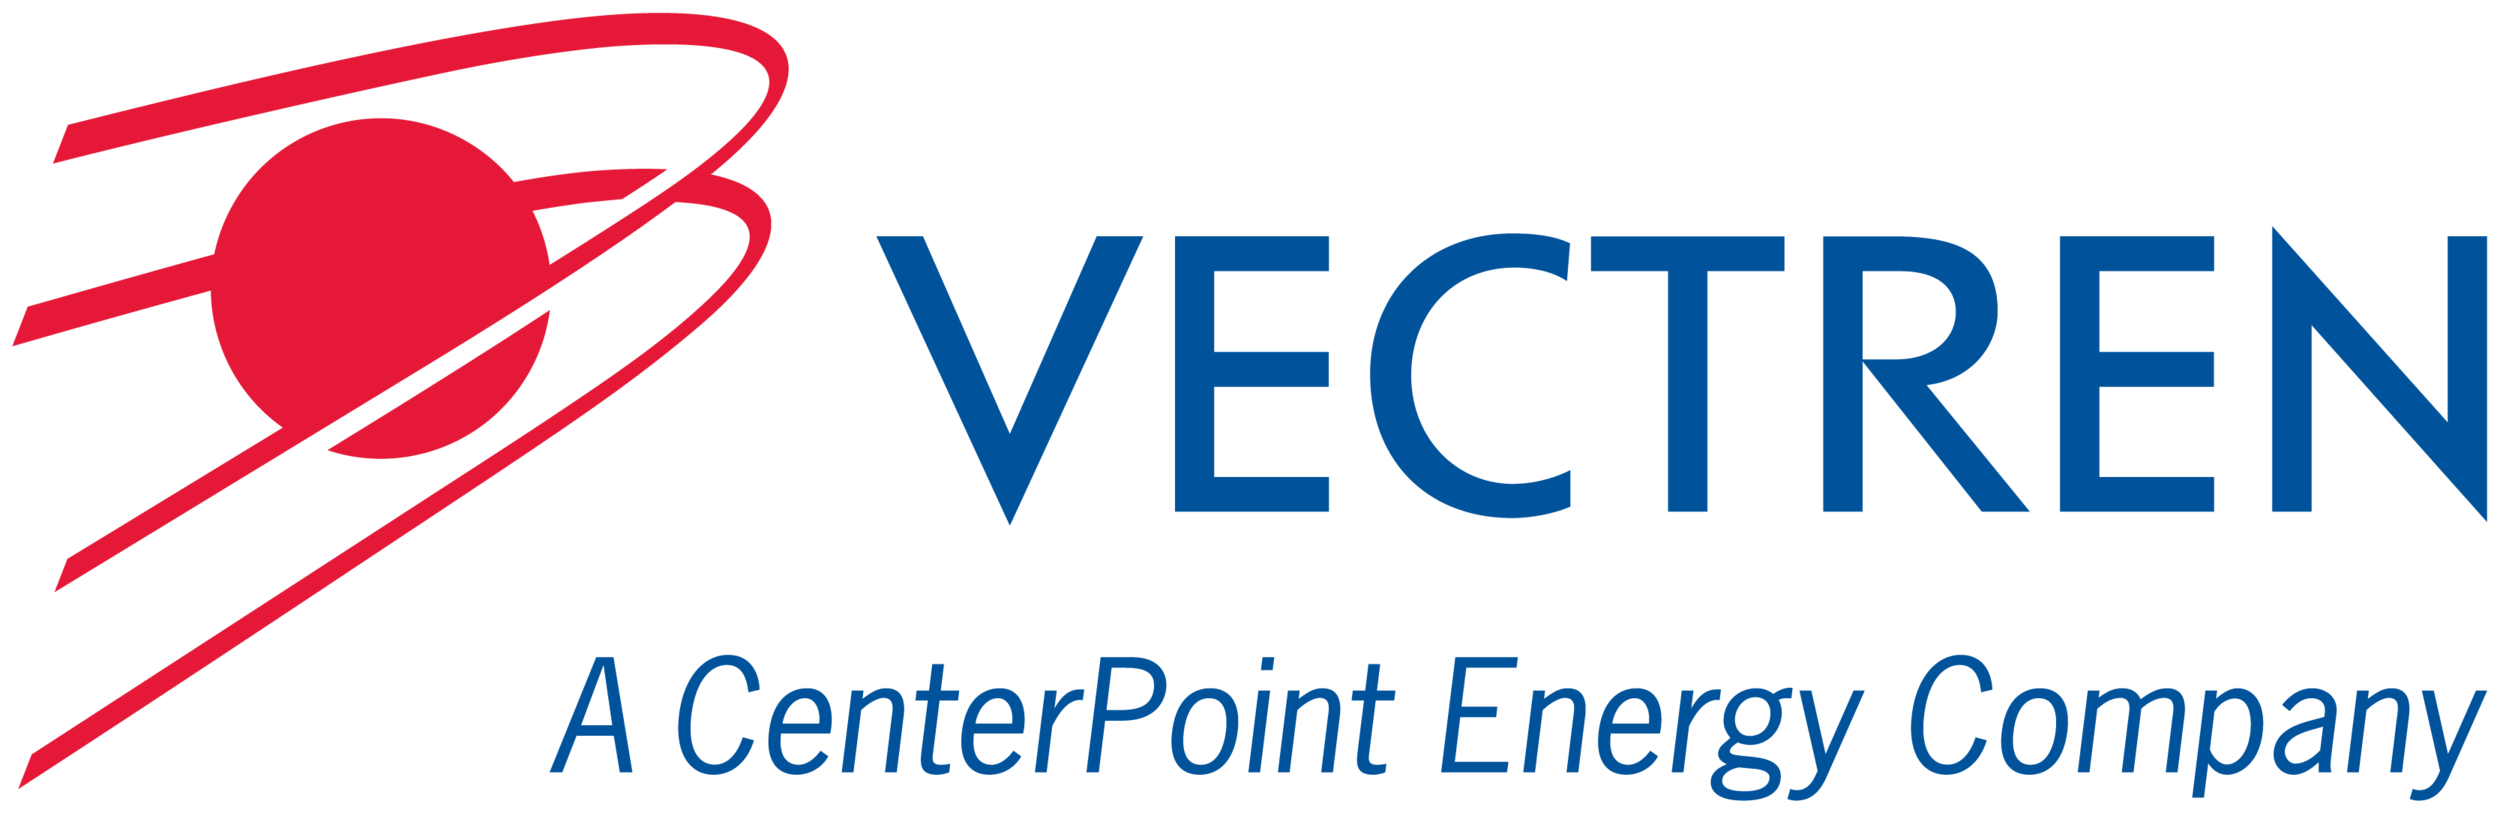 Vectren A CenterPonte Energy Company